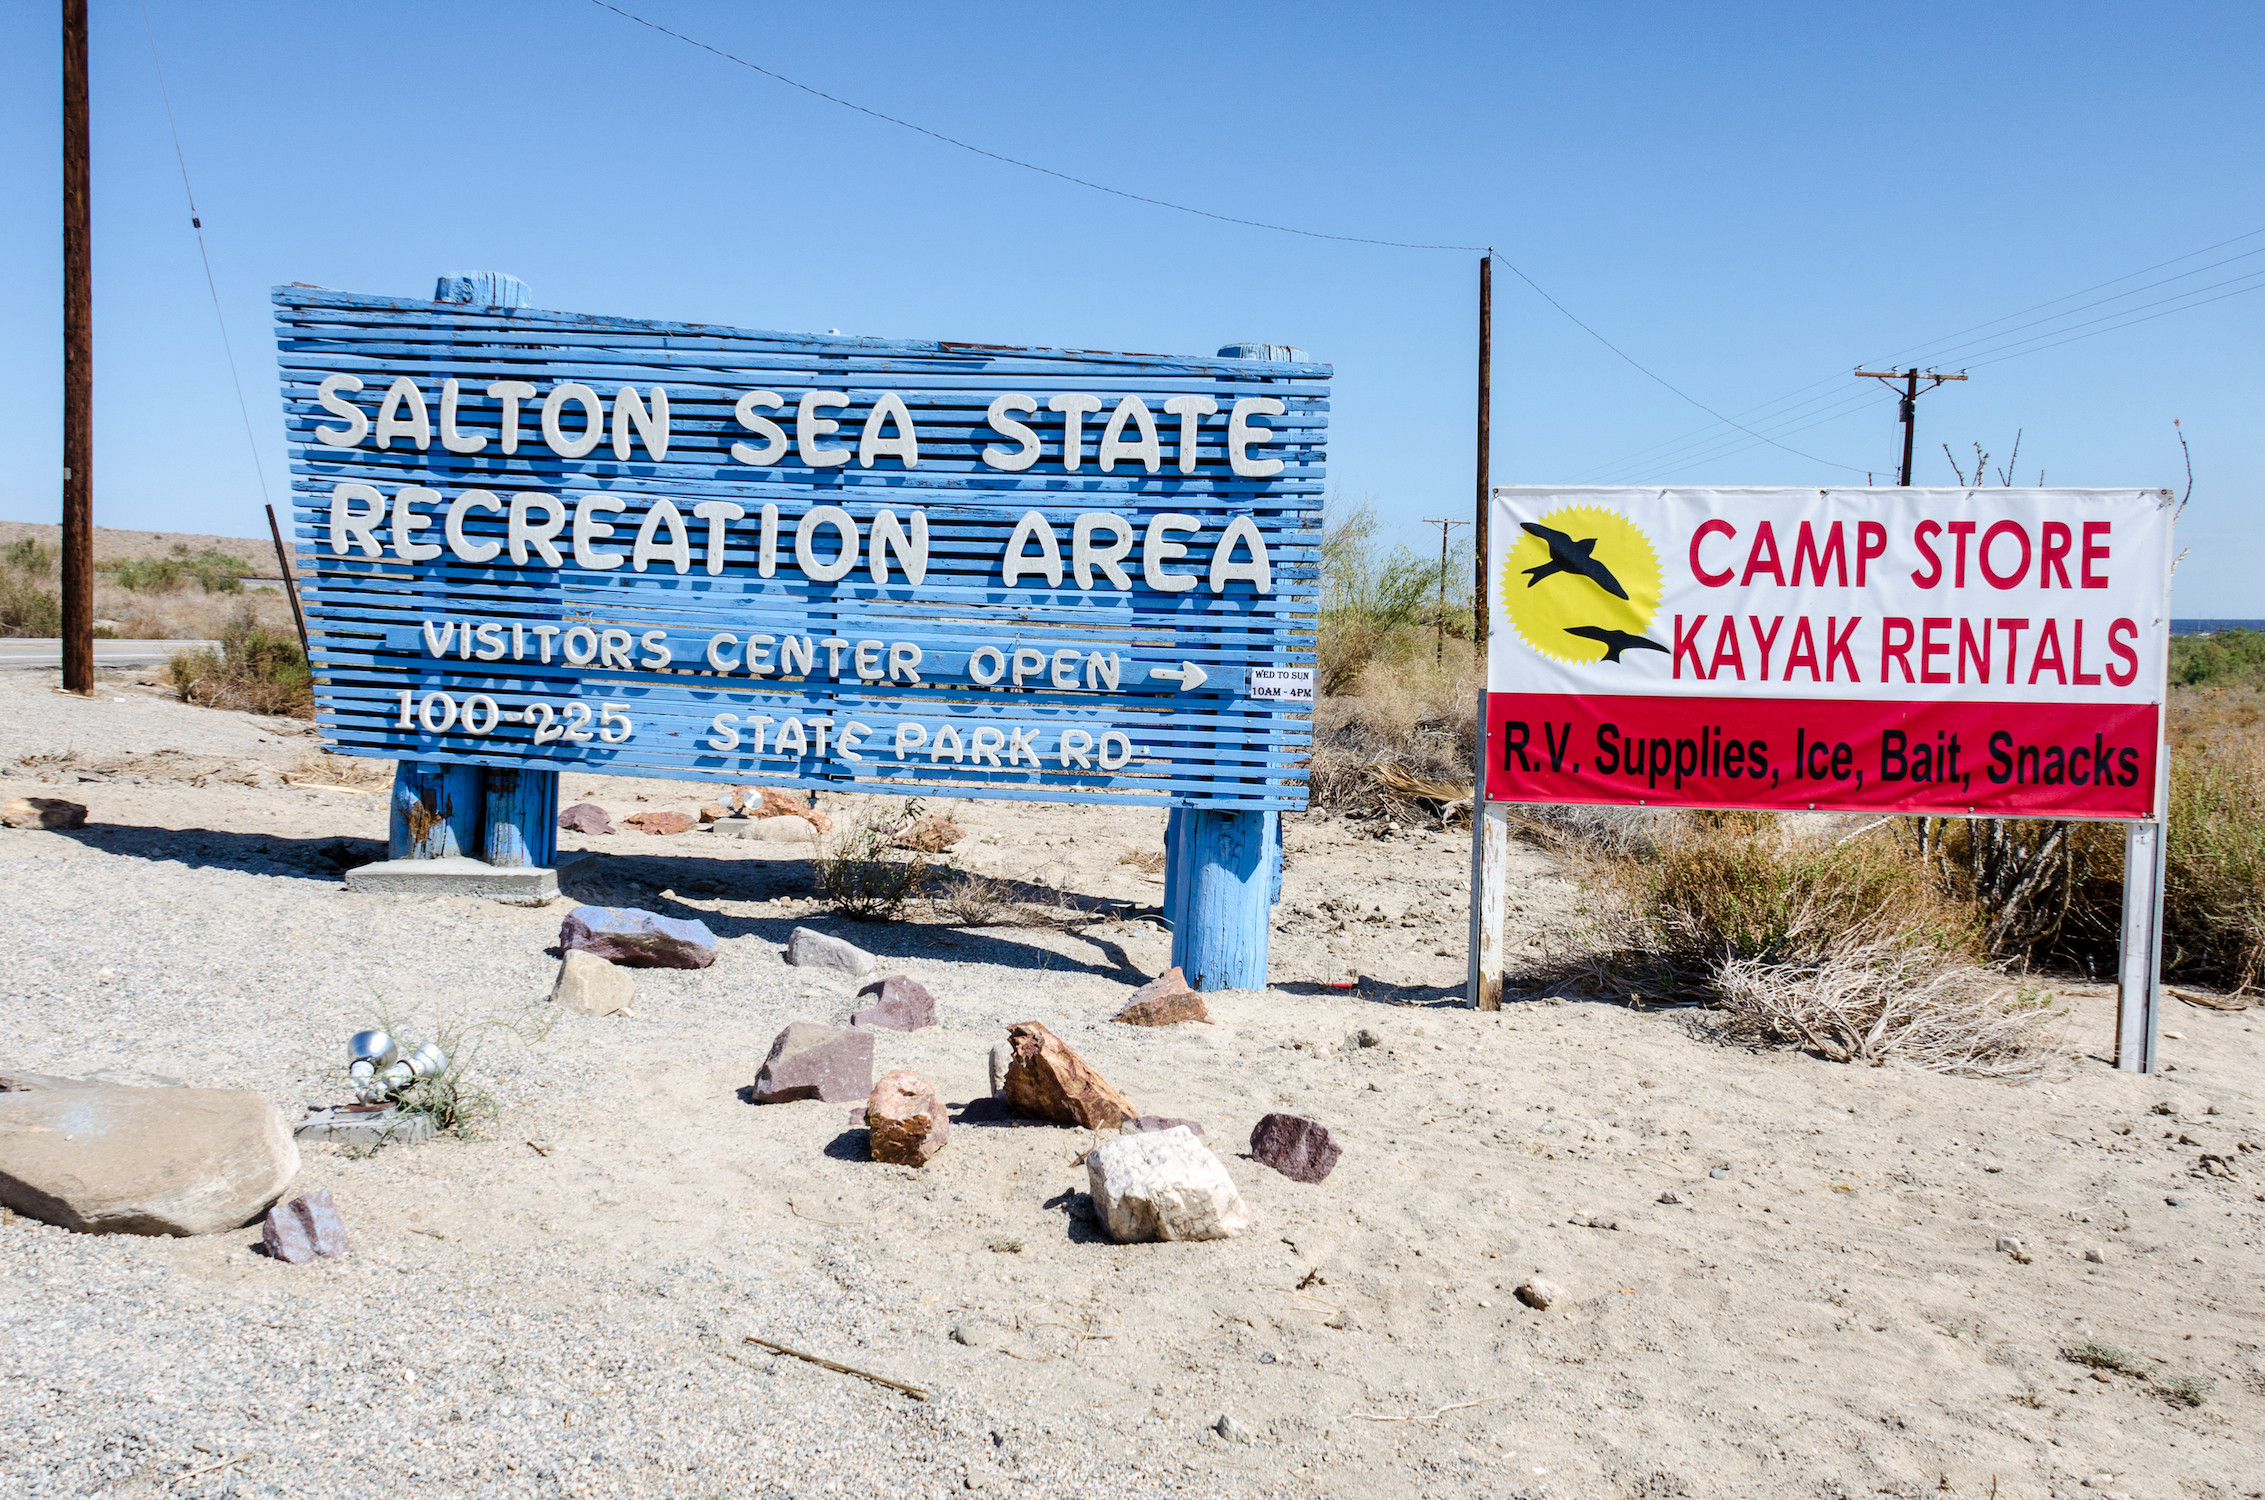 Visite el Mar de Salton, donde el agua es peligrosa, pero el senderismo es excelente - 587